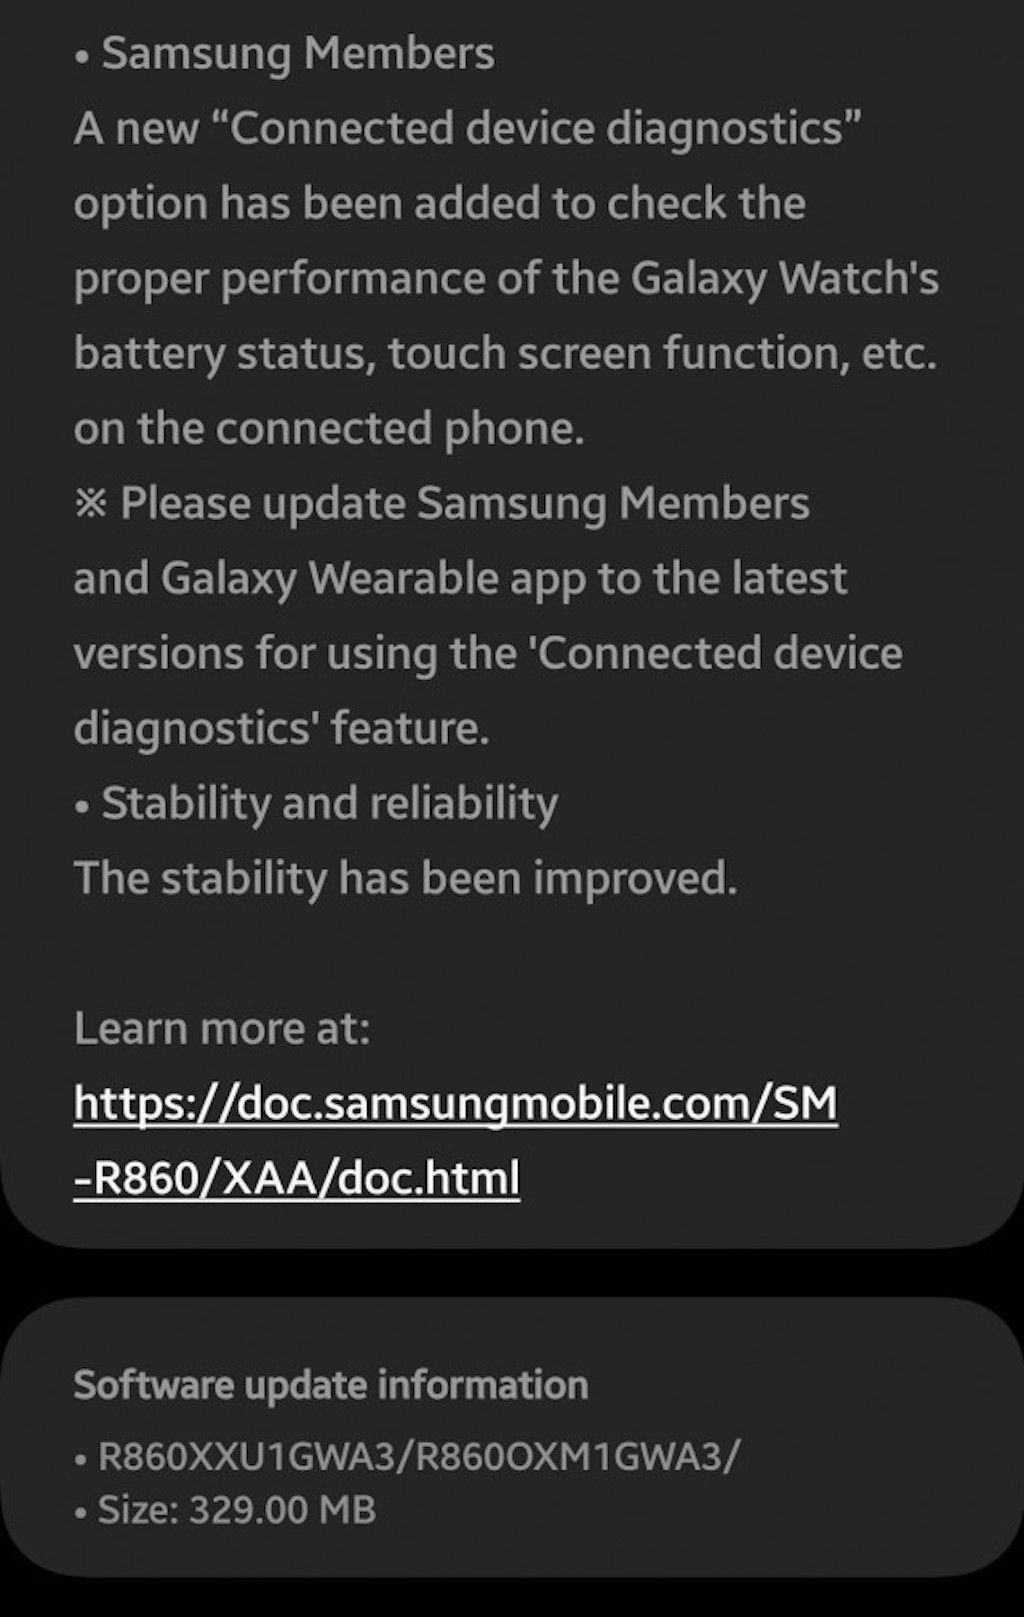 Đeo đồng hồ Samsung Galaxy Watch 4, cập nhật ngay phần mềm để điều khiển zoom máy ảnh trên Galaxy S20 và Z Flip